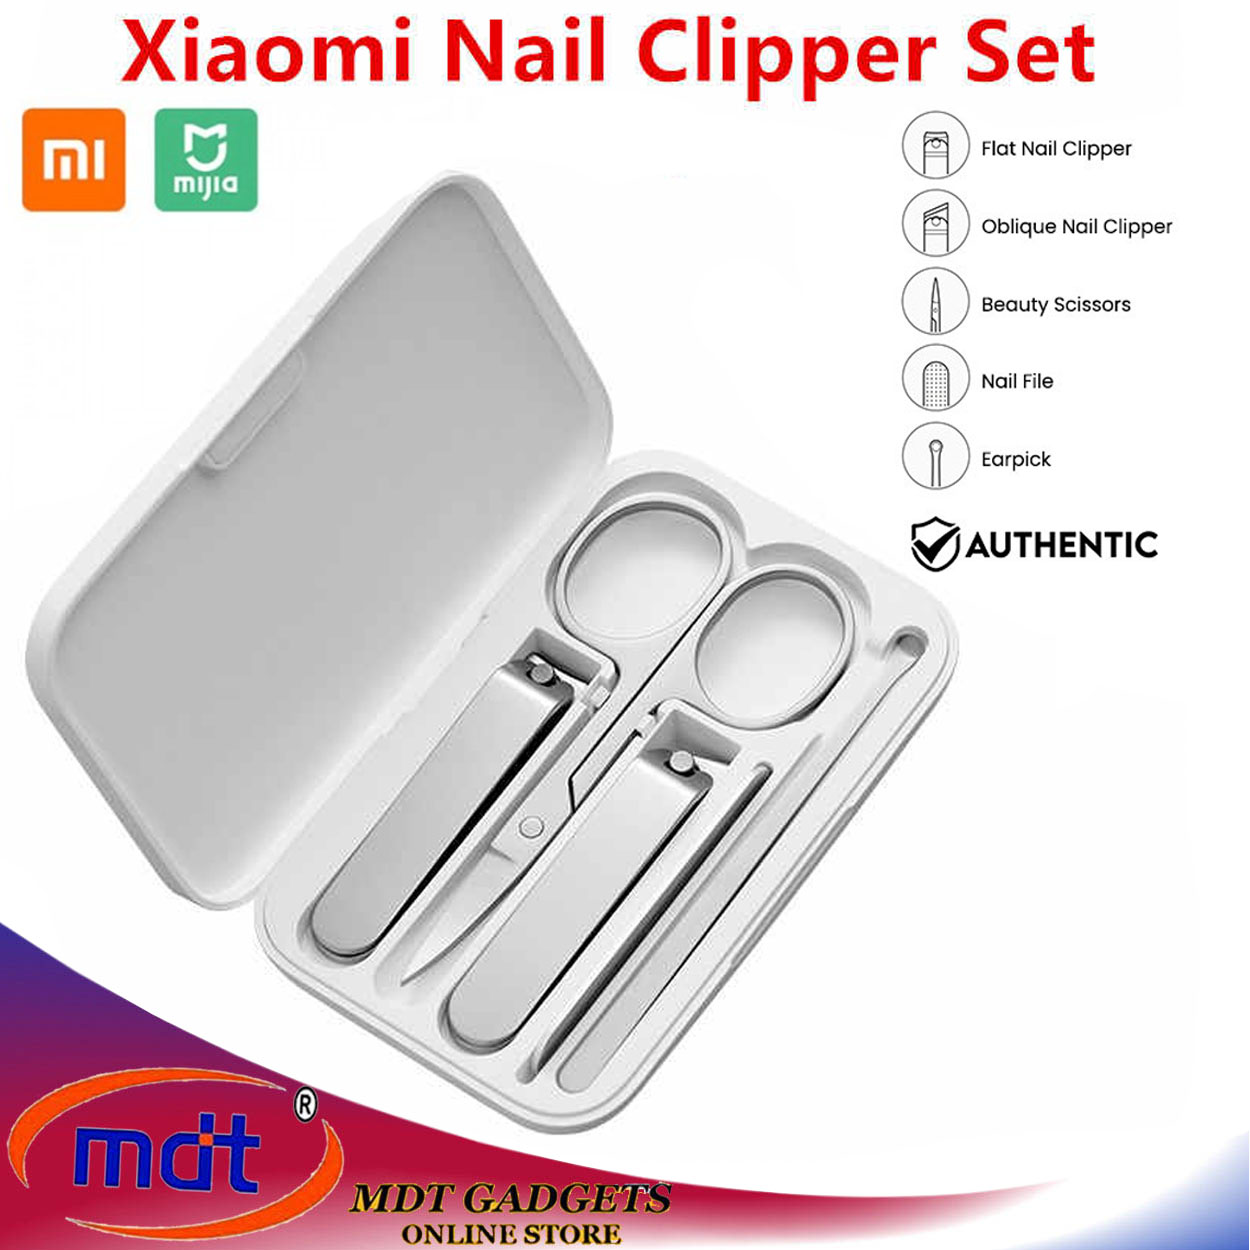 xiaomi nail clipper set